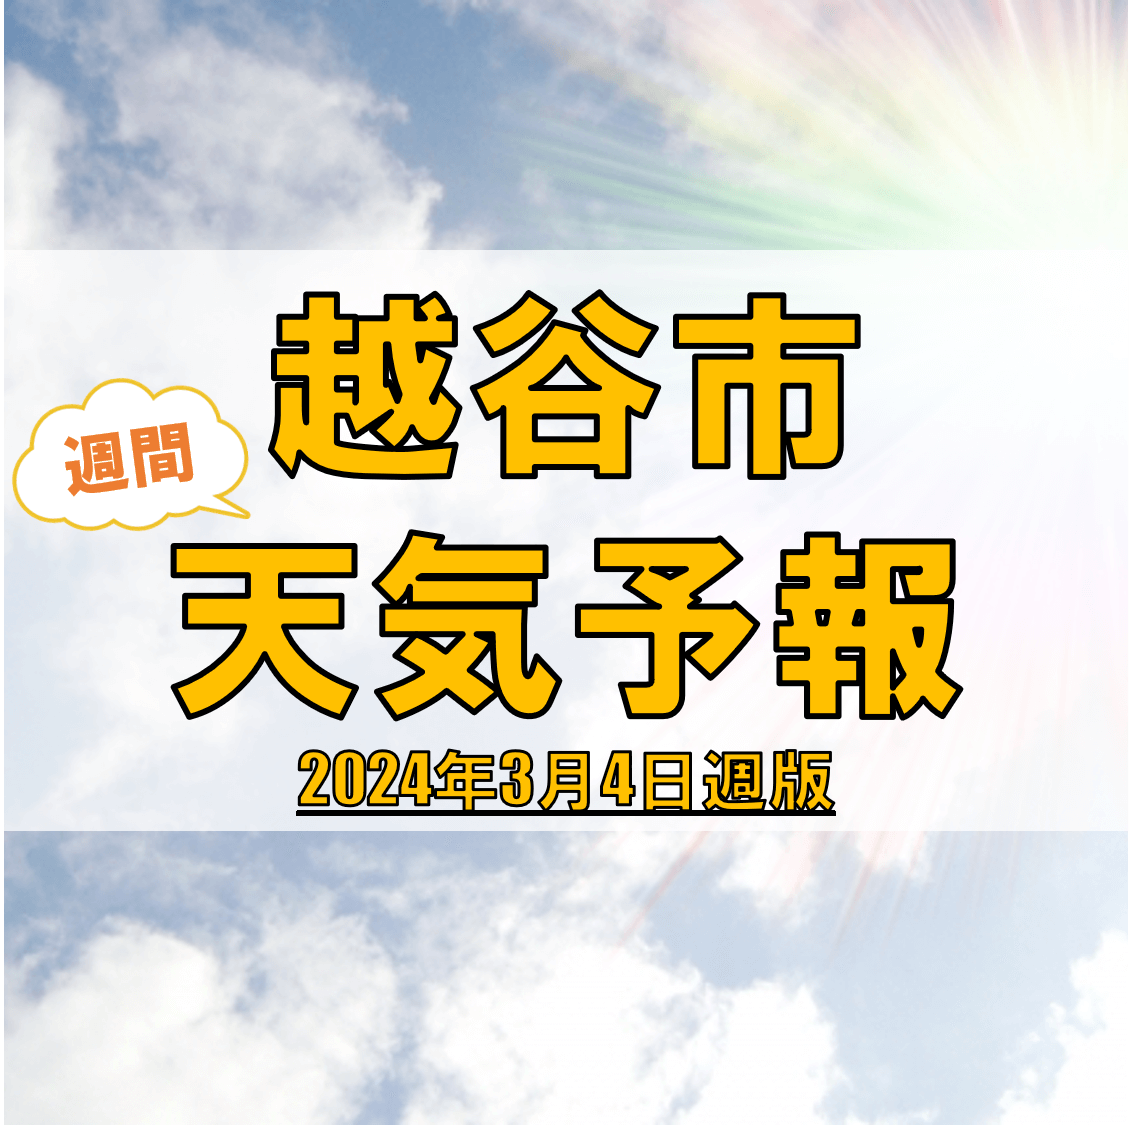 越谷市の天気 週間予報【2024年3月4日週】